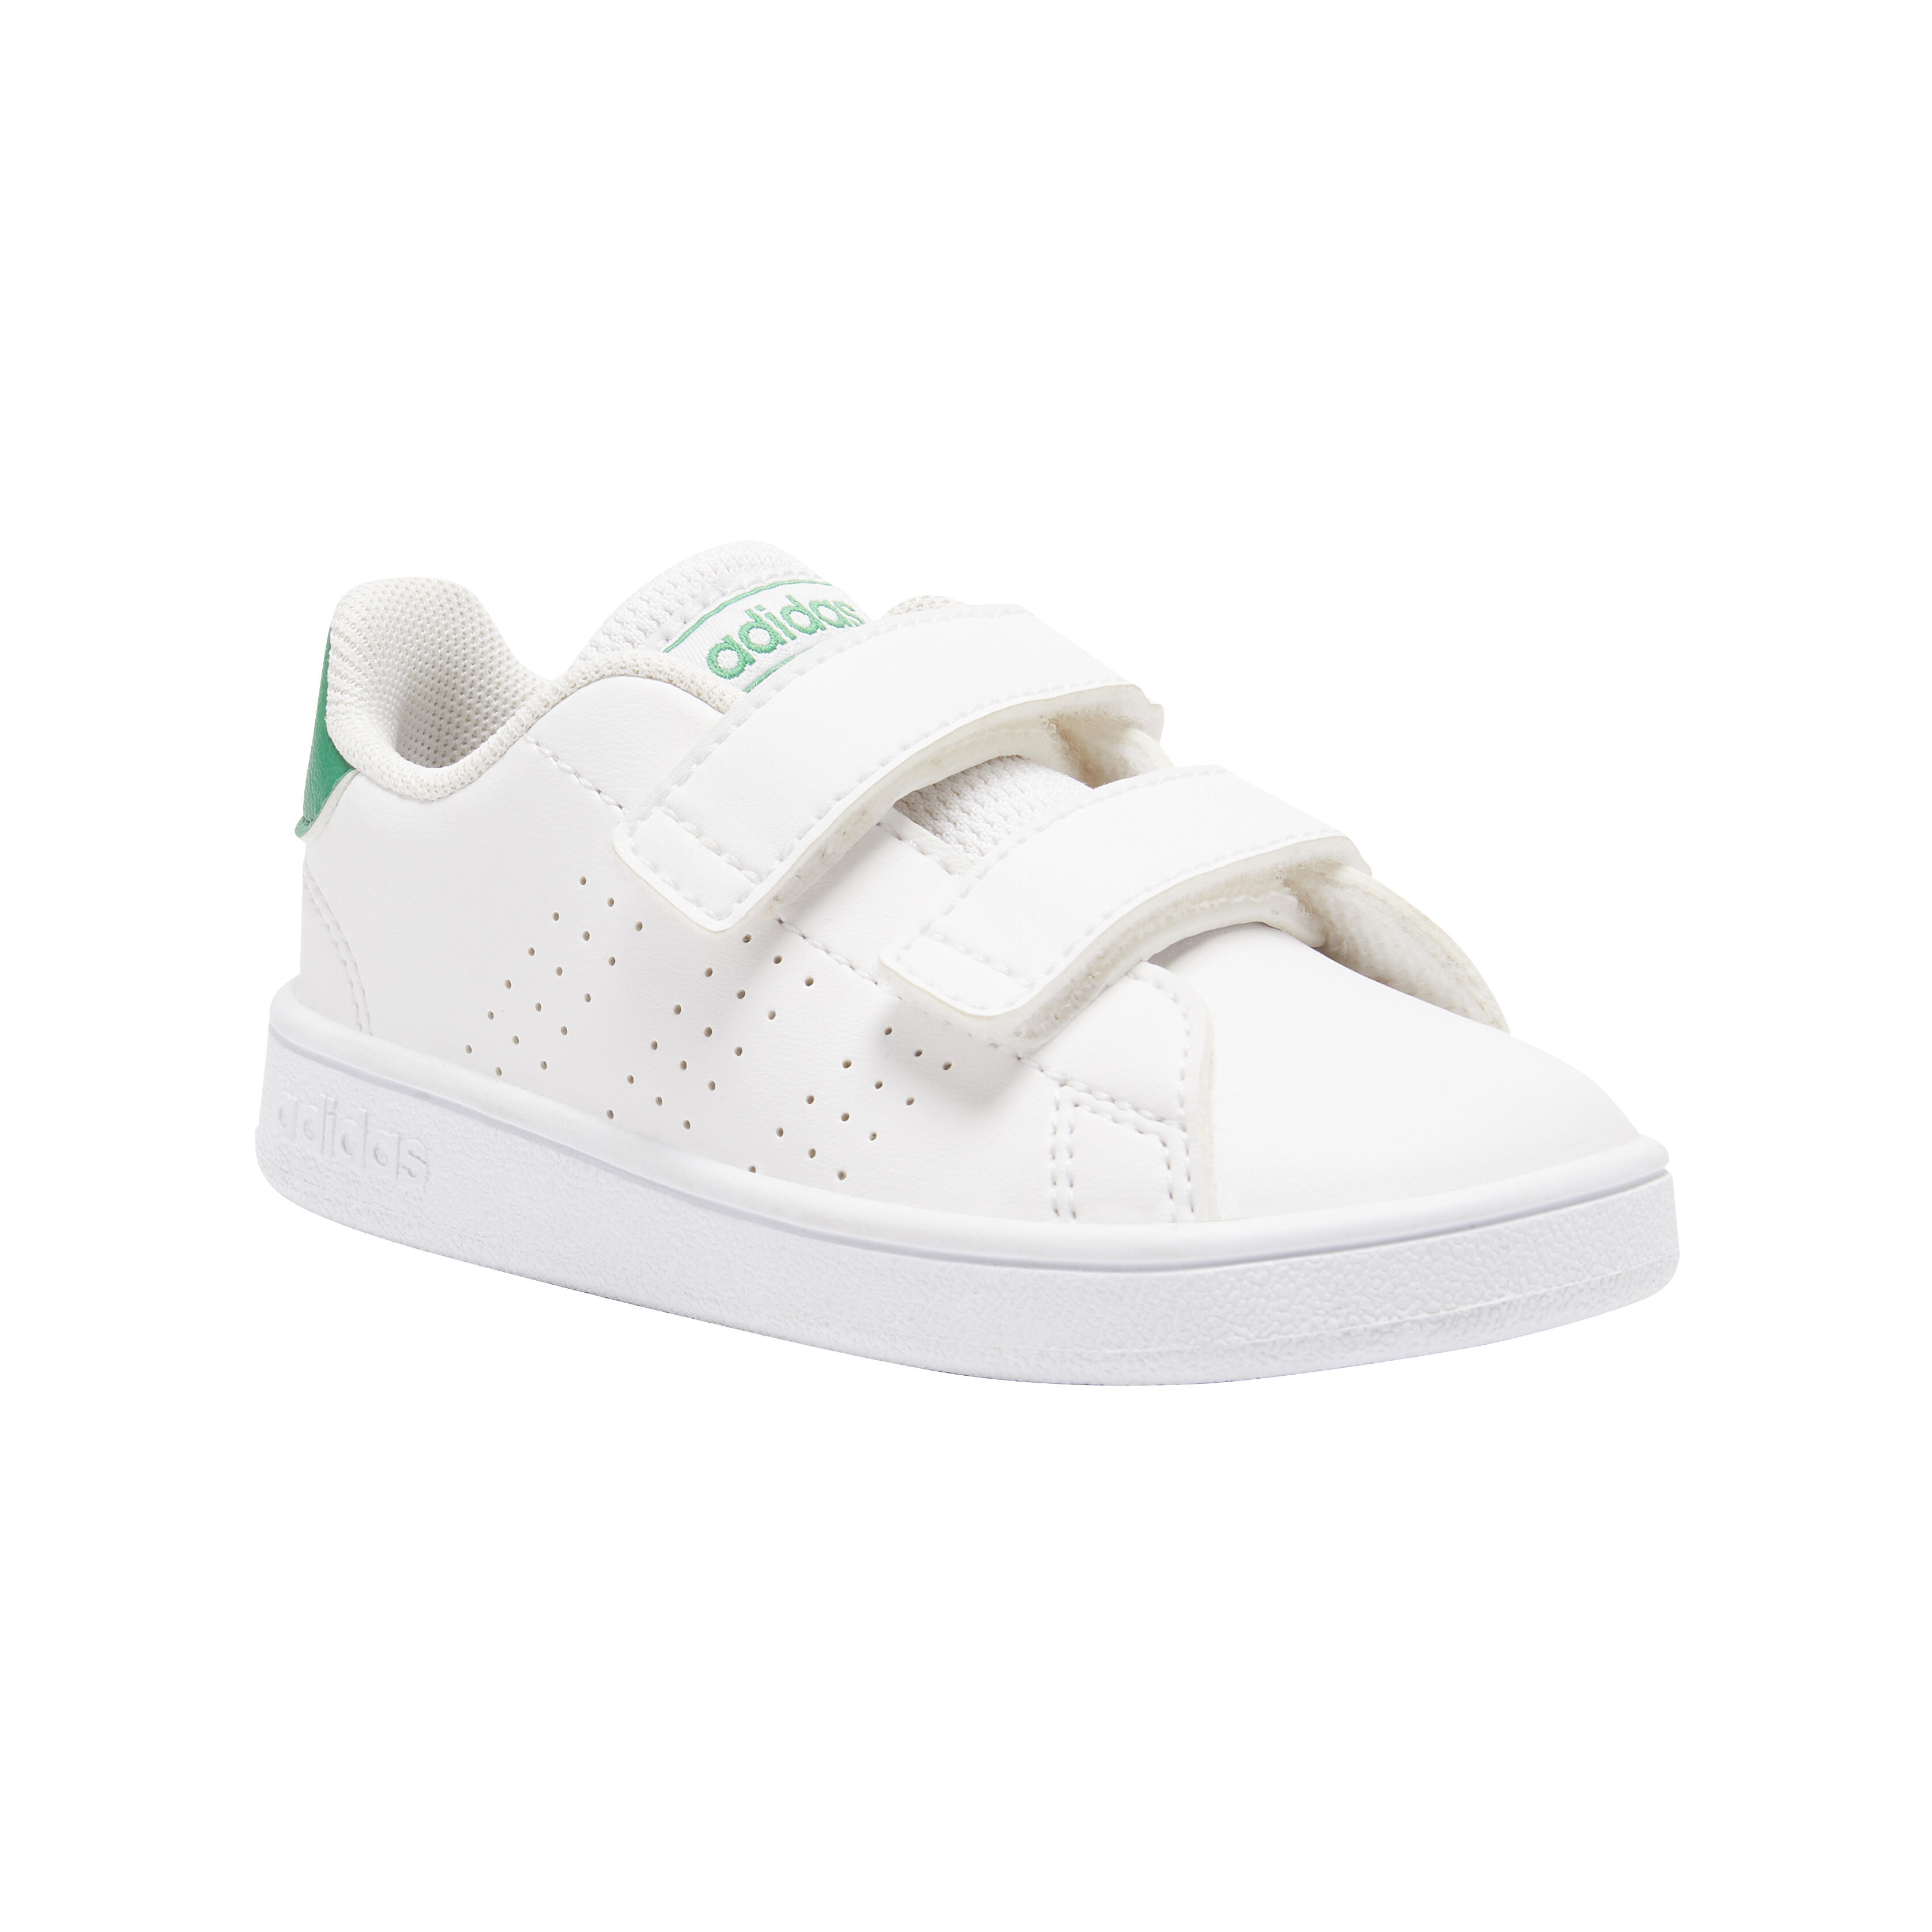 Încălțăminte ADVANTAGE alb verde copii baby gym adidas